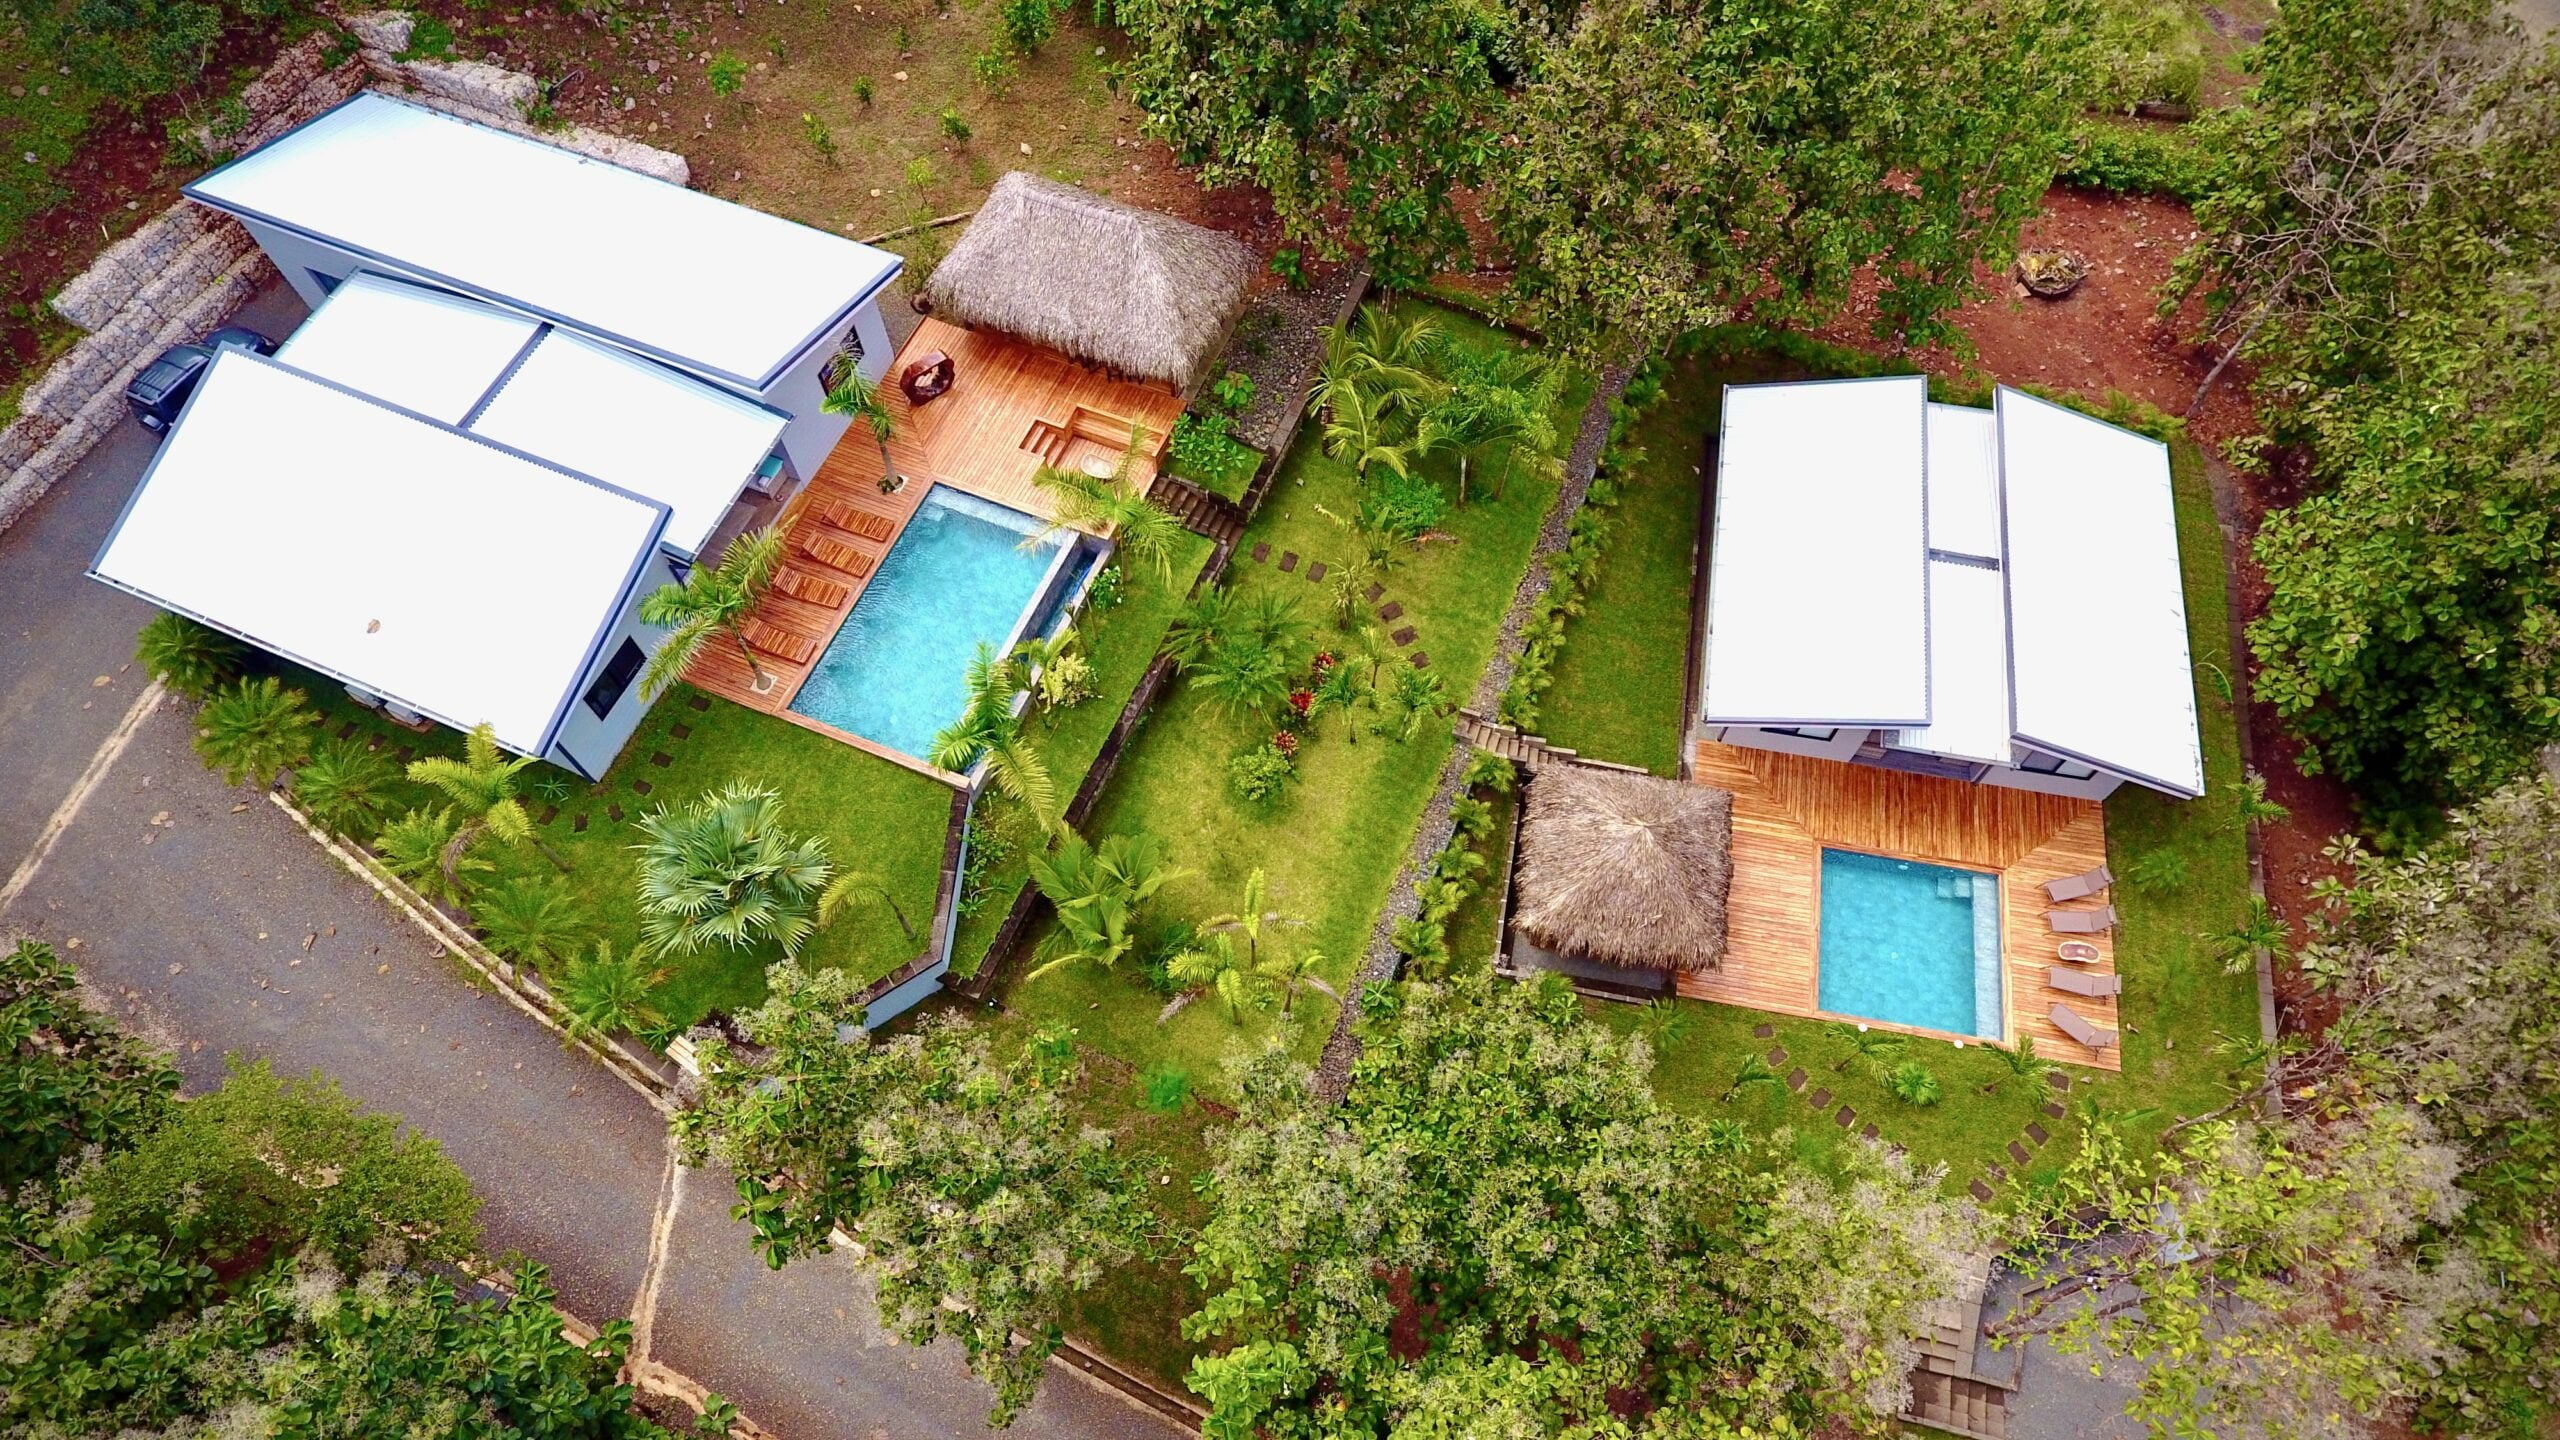 Rental income Villa Coco conbo roi house for sale